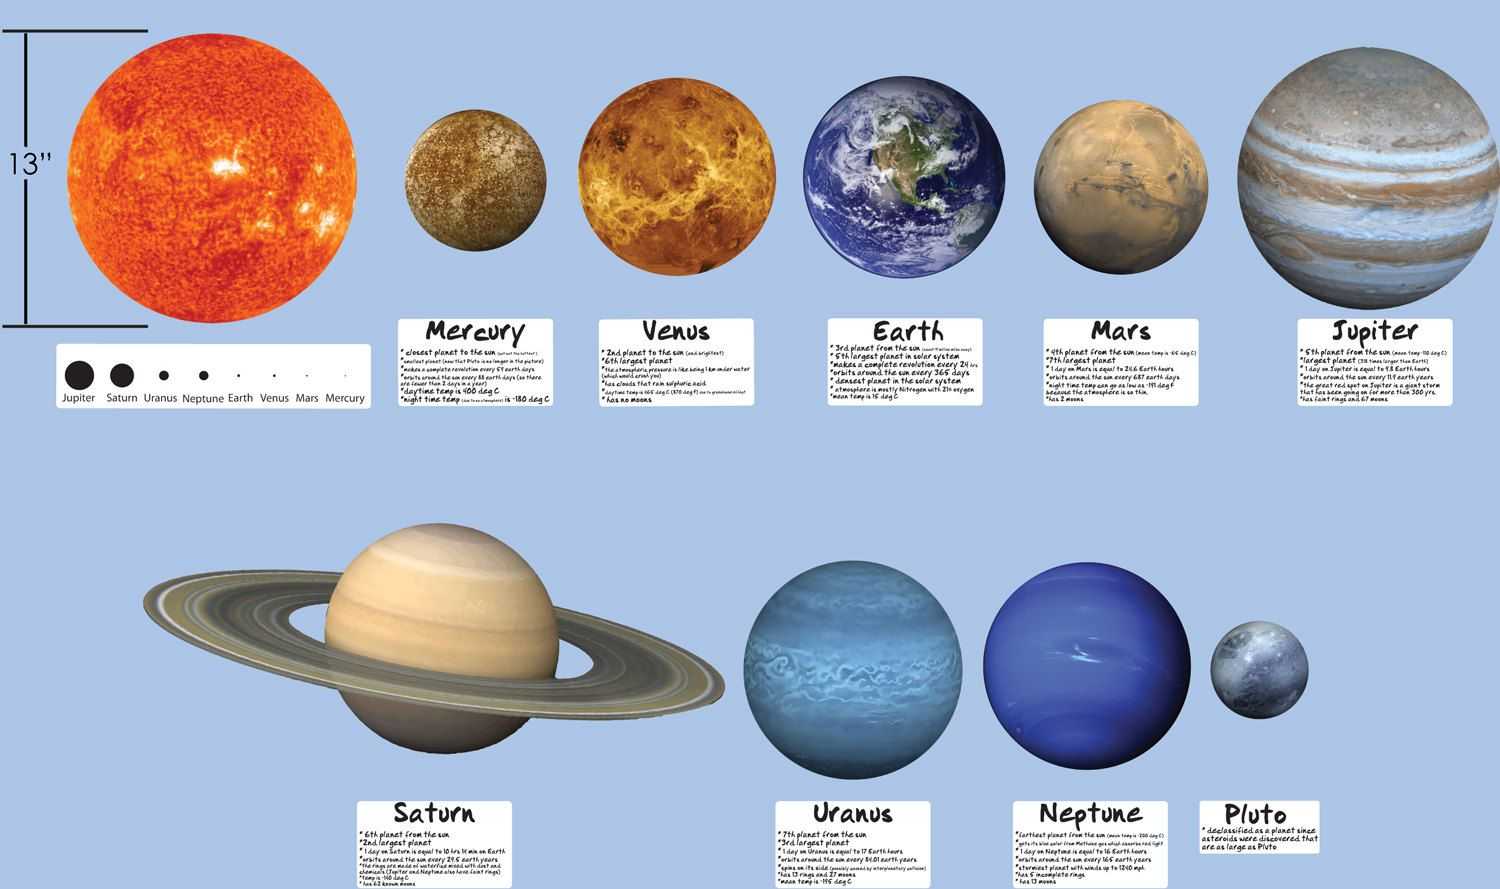 Планеты солнечной системы - расположение по порядку и краткая характеристика